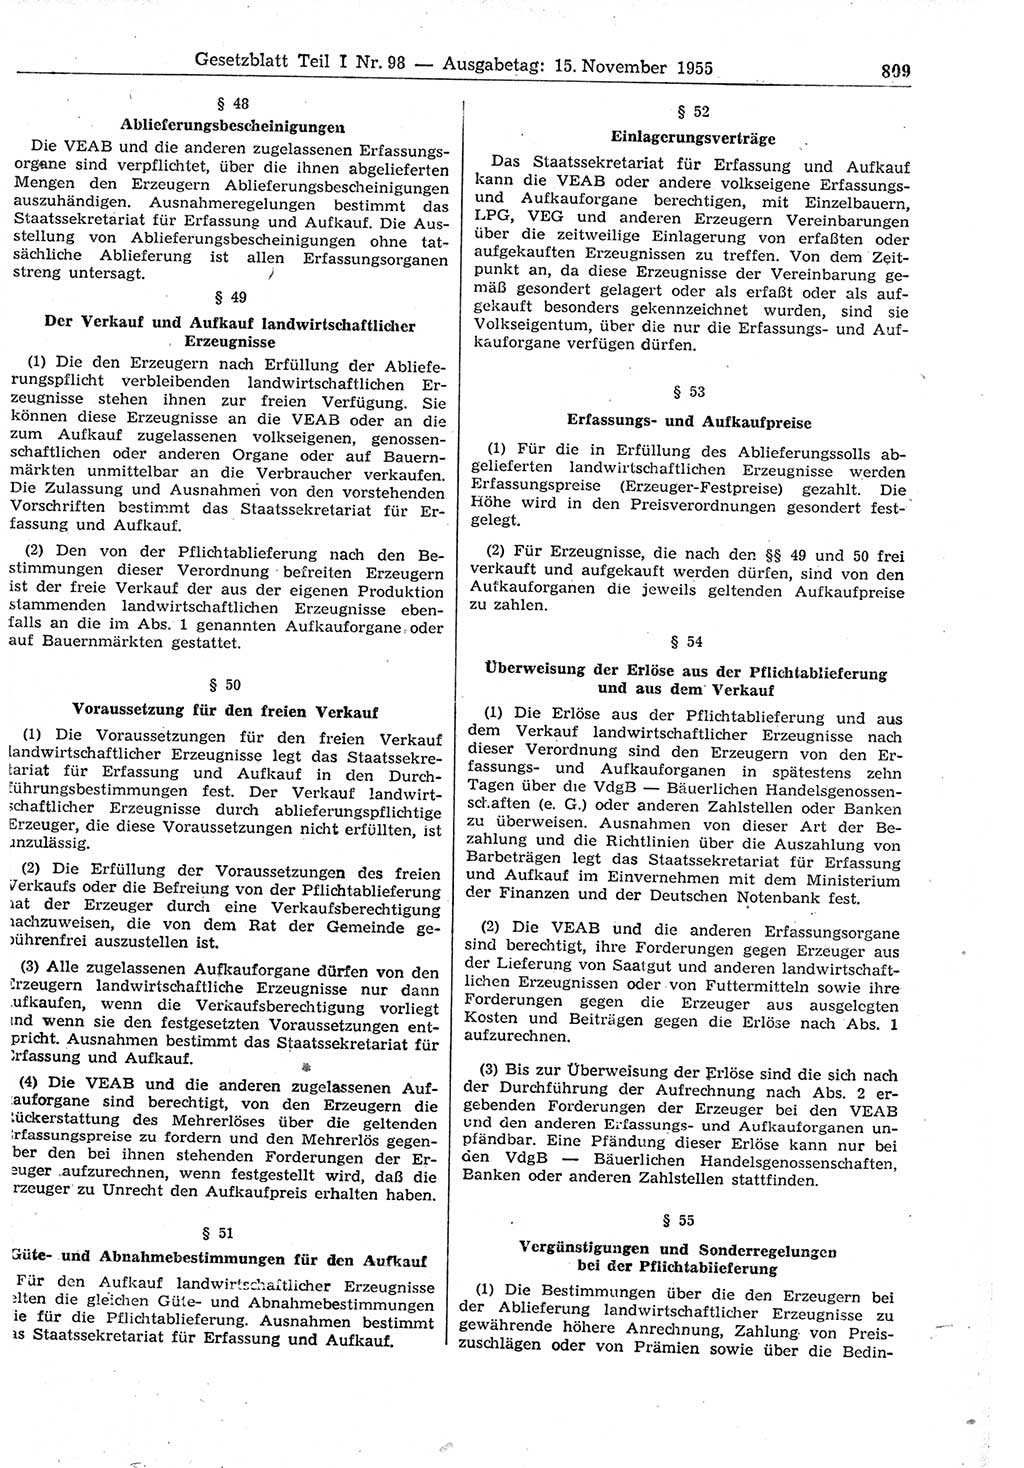 Gesetzblatt (GBl.) der Deutschen Demokratischen Republik (DDR) Teil Ⅰ 1955, Seite 809 (GBl. DDR Ⅰ 1955, S. 809)